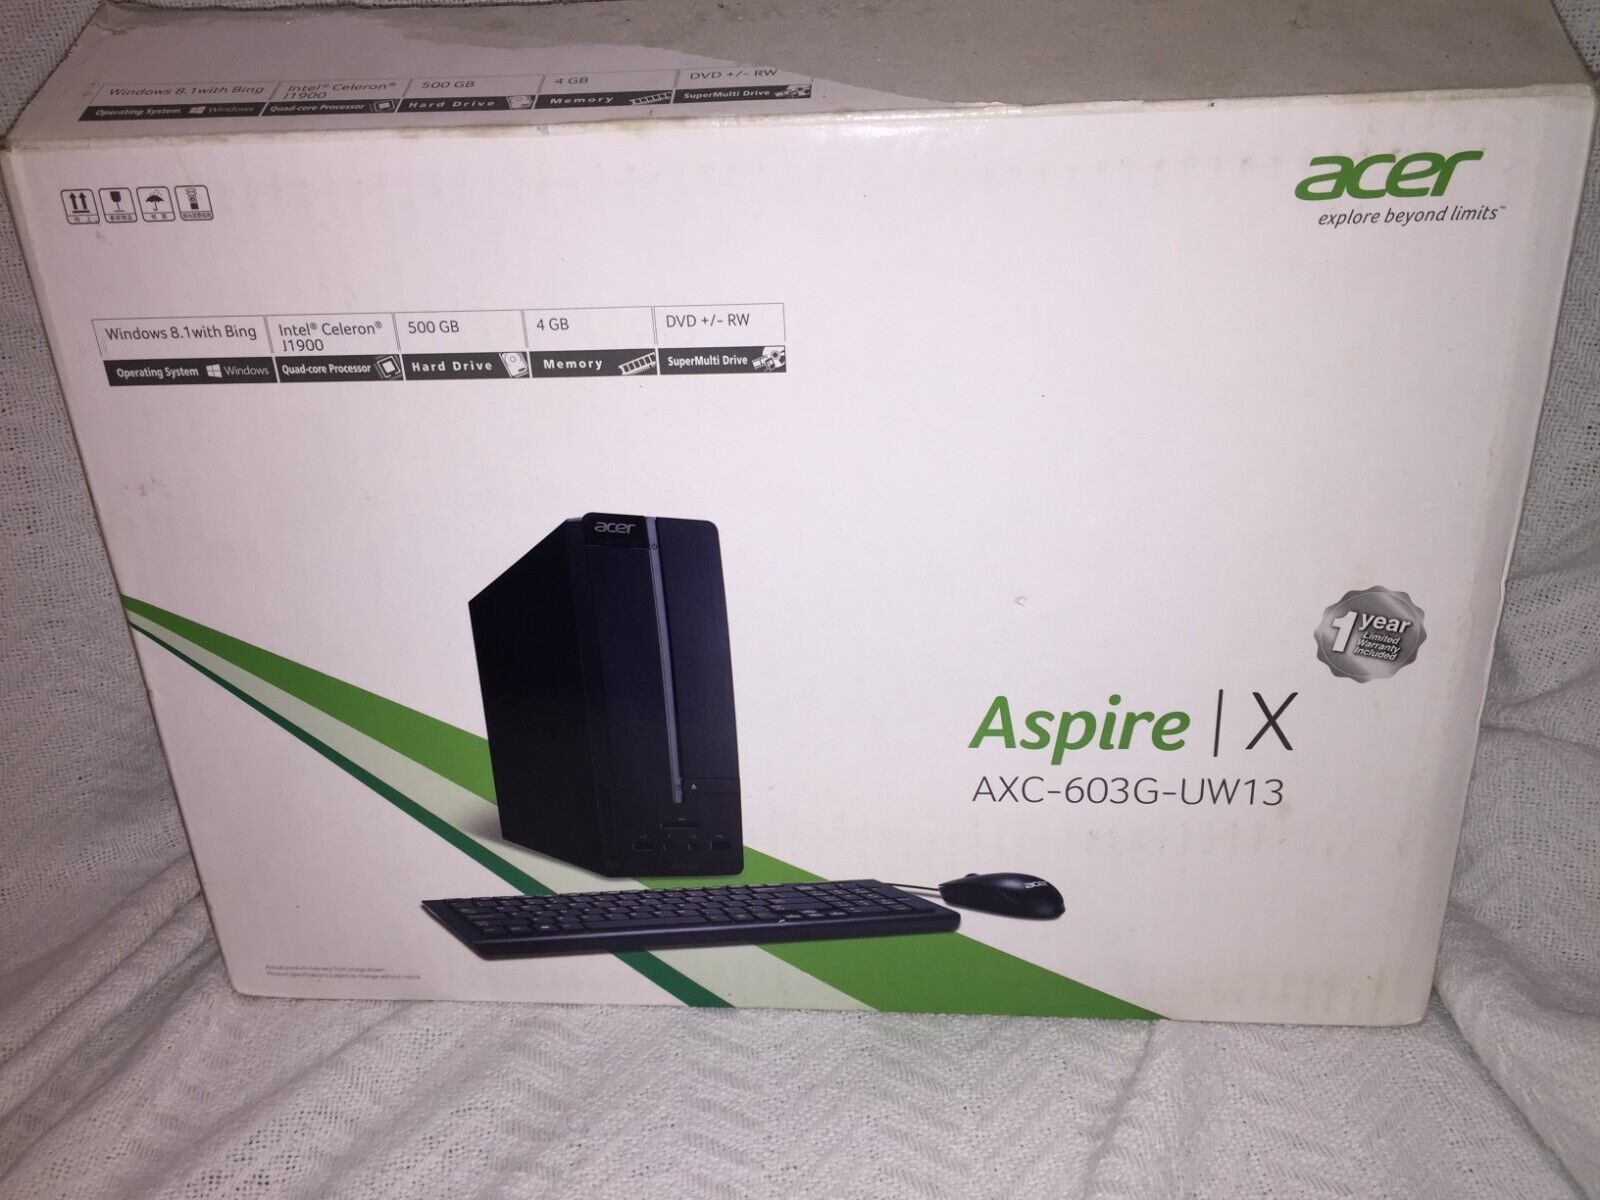 Acer Aspire X Windows 10, 500 GB, 4 GB, DVDRW, HDMI, USB 3.0/2.0 AXC-603G-UW13